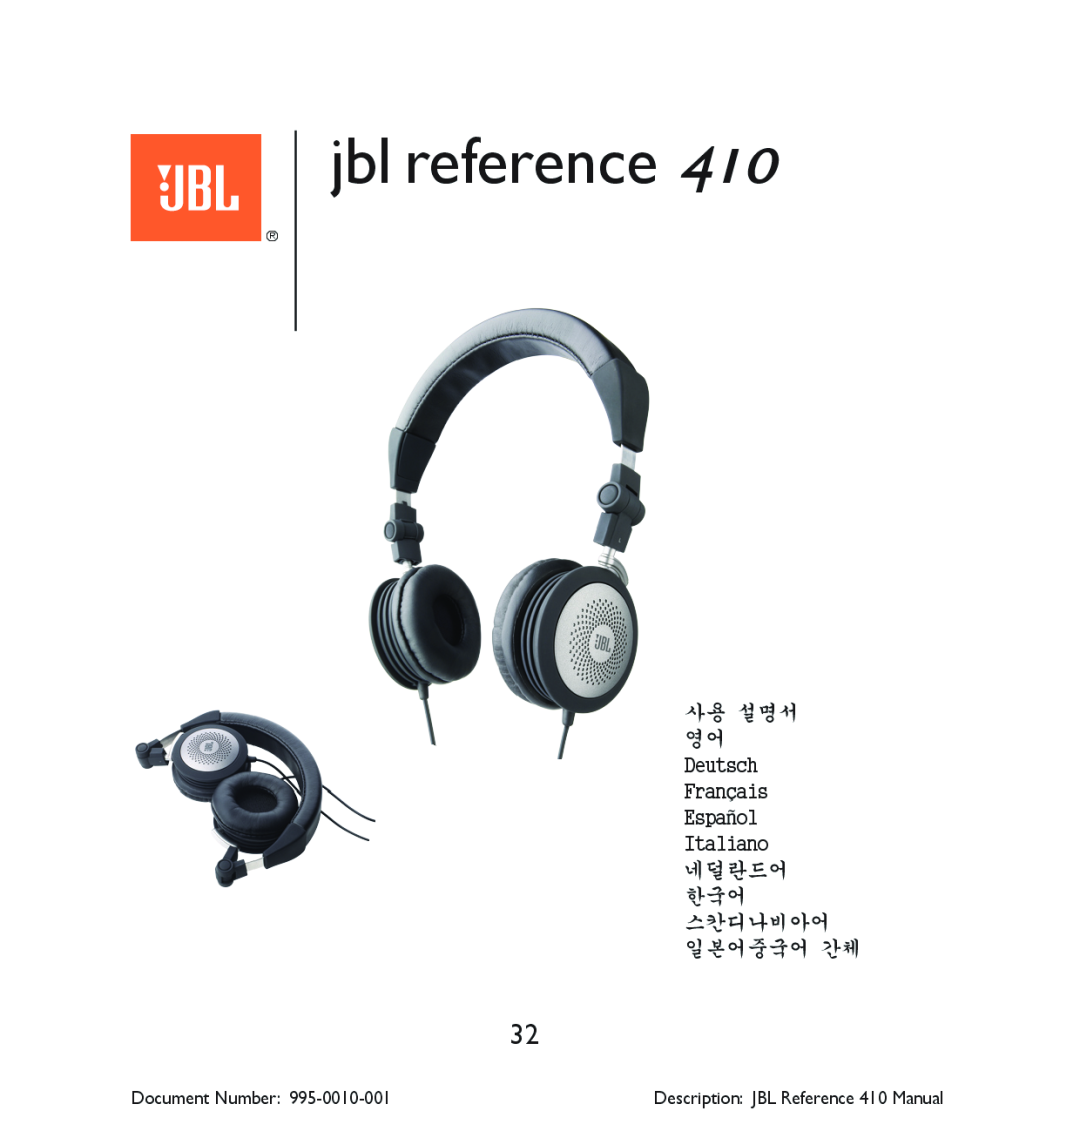 JBL manual jbl reference, Document Number, Description JBL Reference 410 Manual 